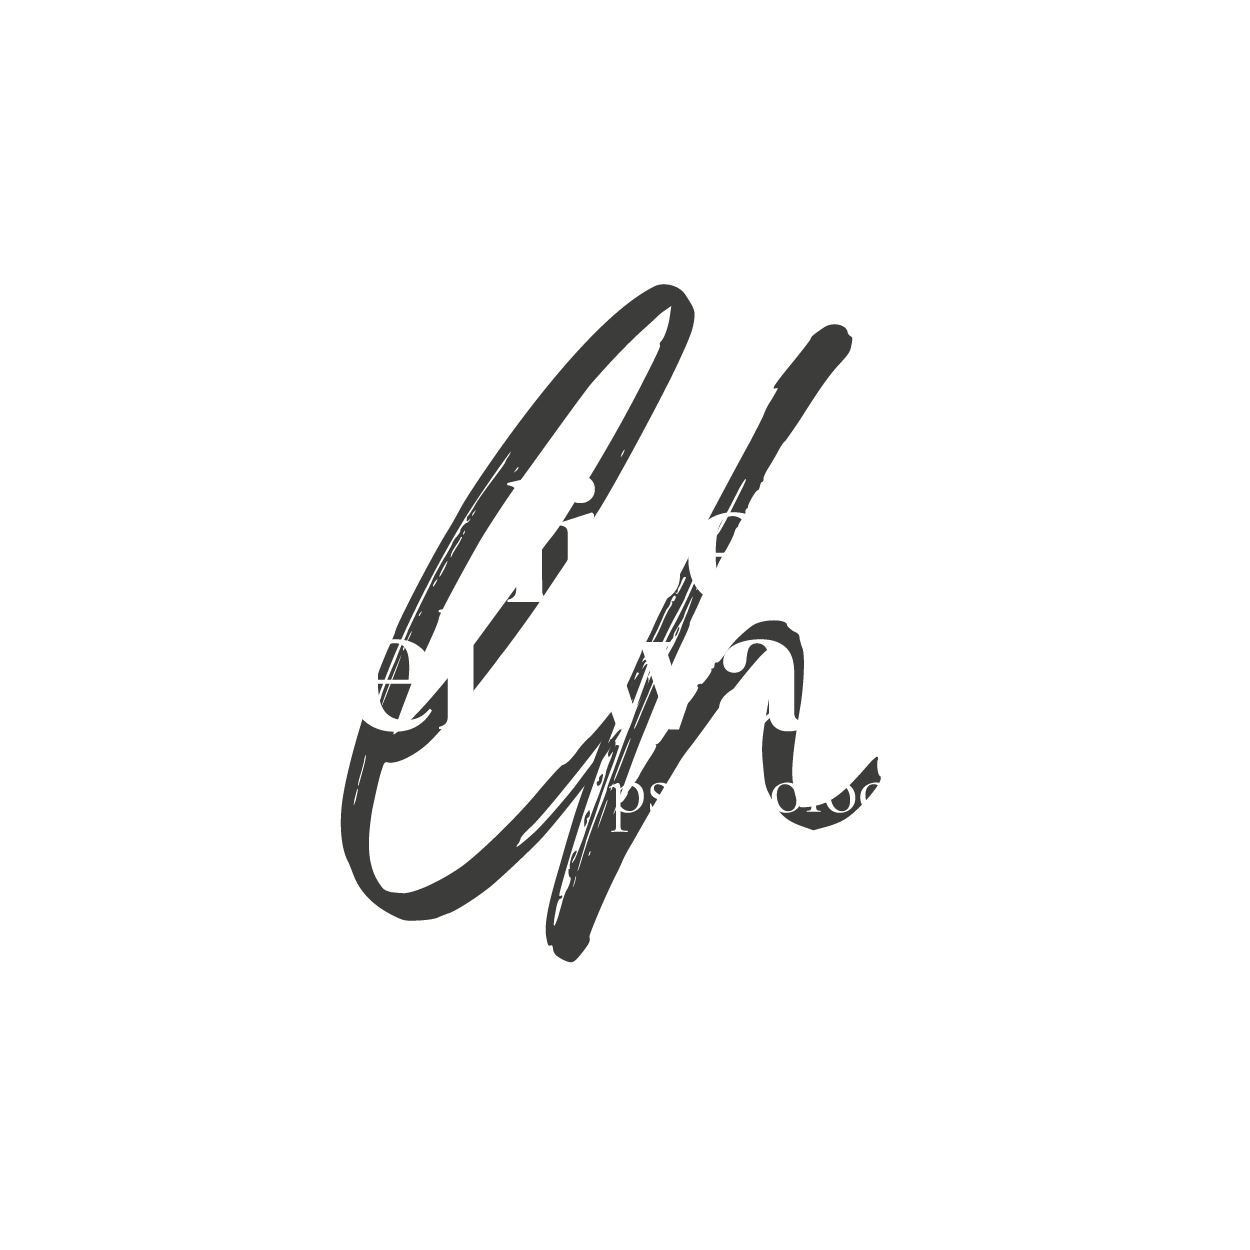 Lise Helewaut